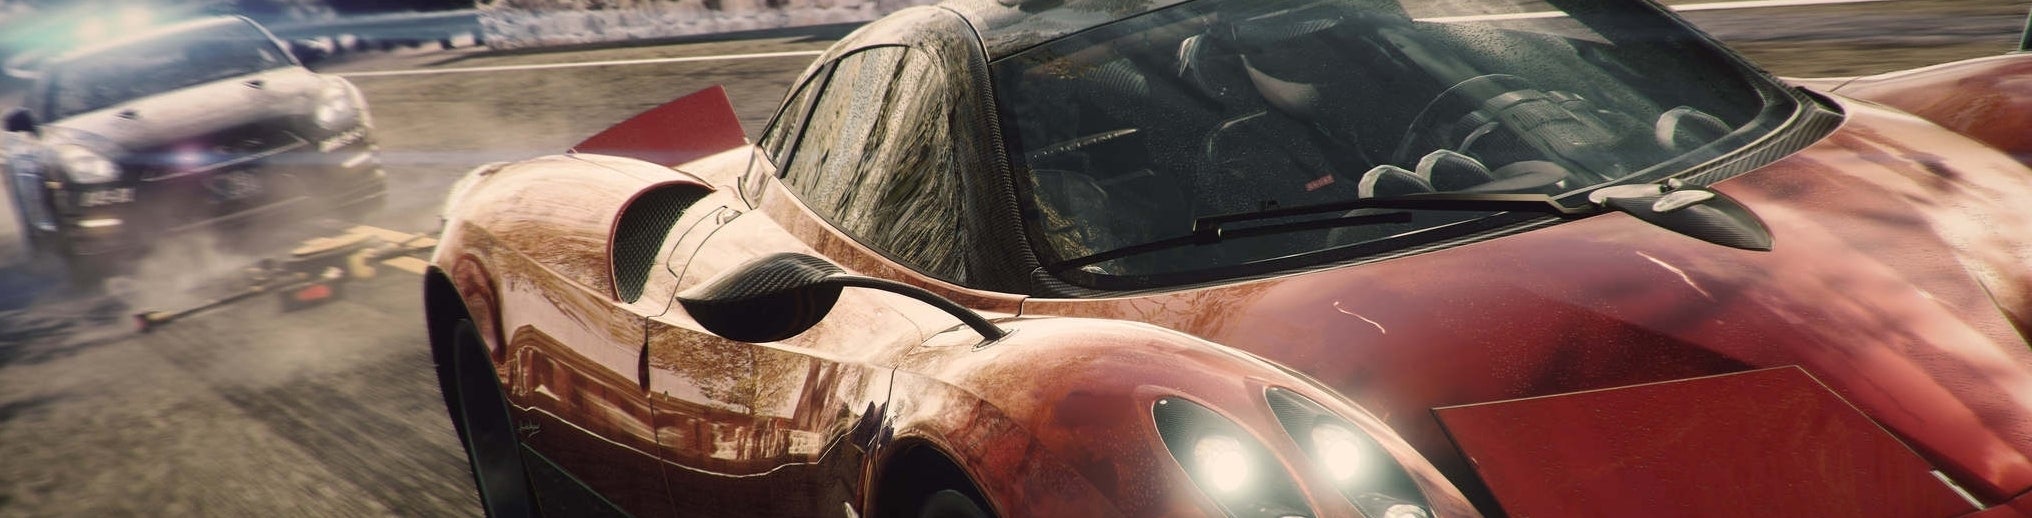 Afbeeldingen van Need for Speed: Rivals niet in de planning voor Wii U